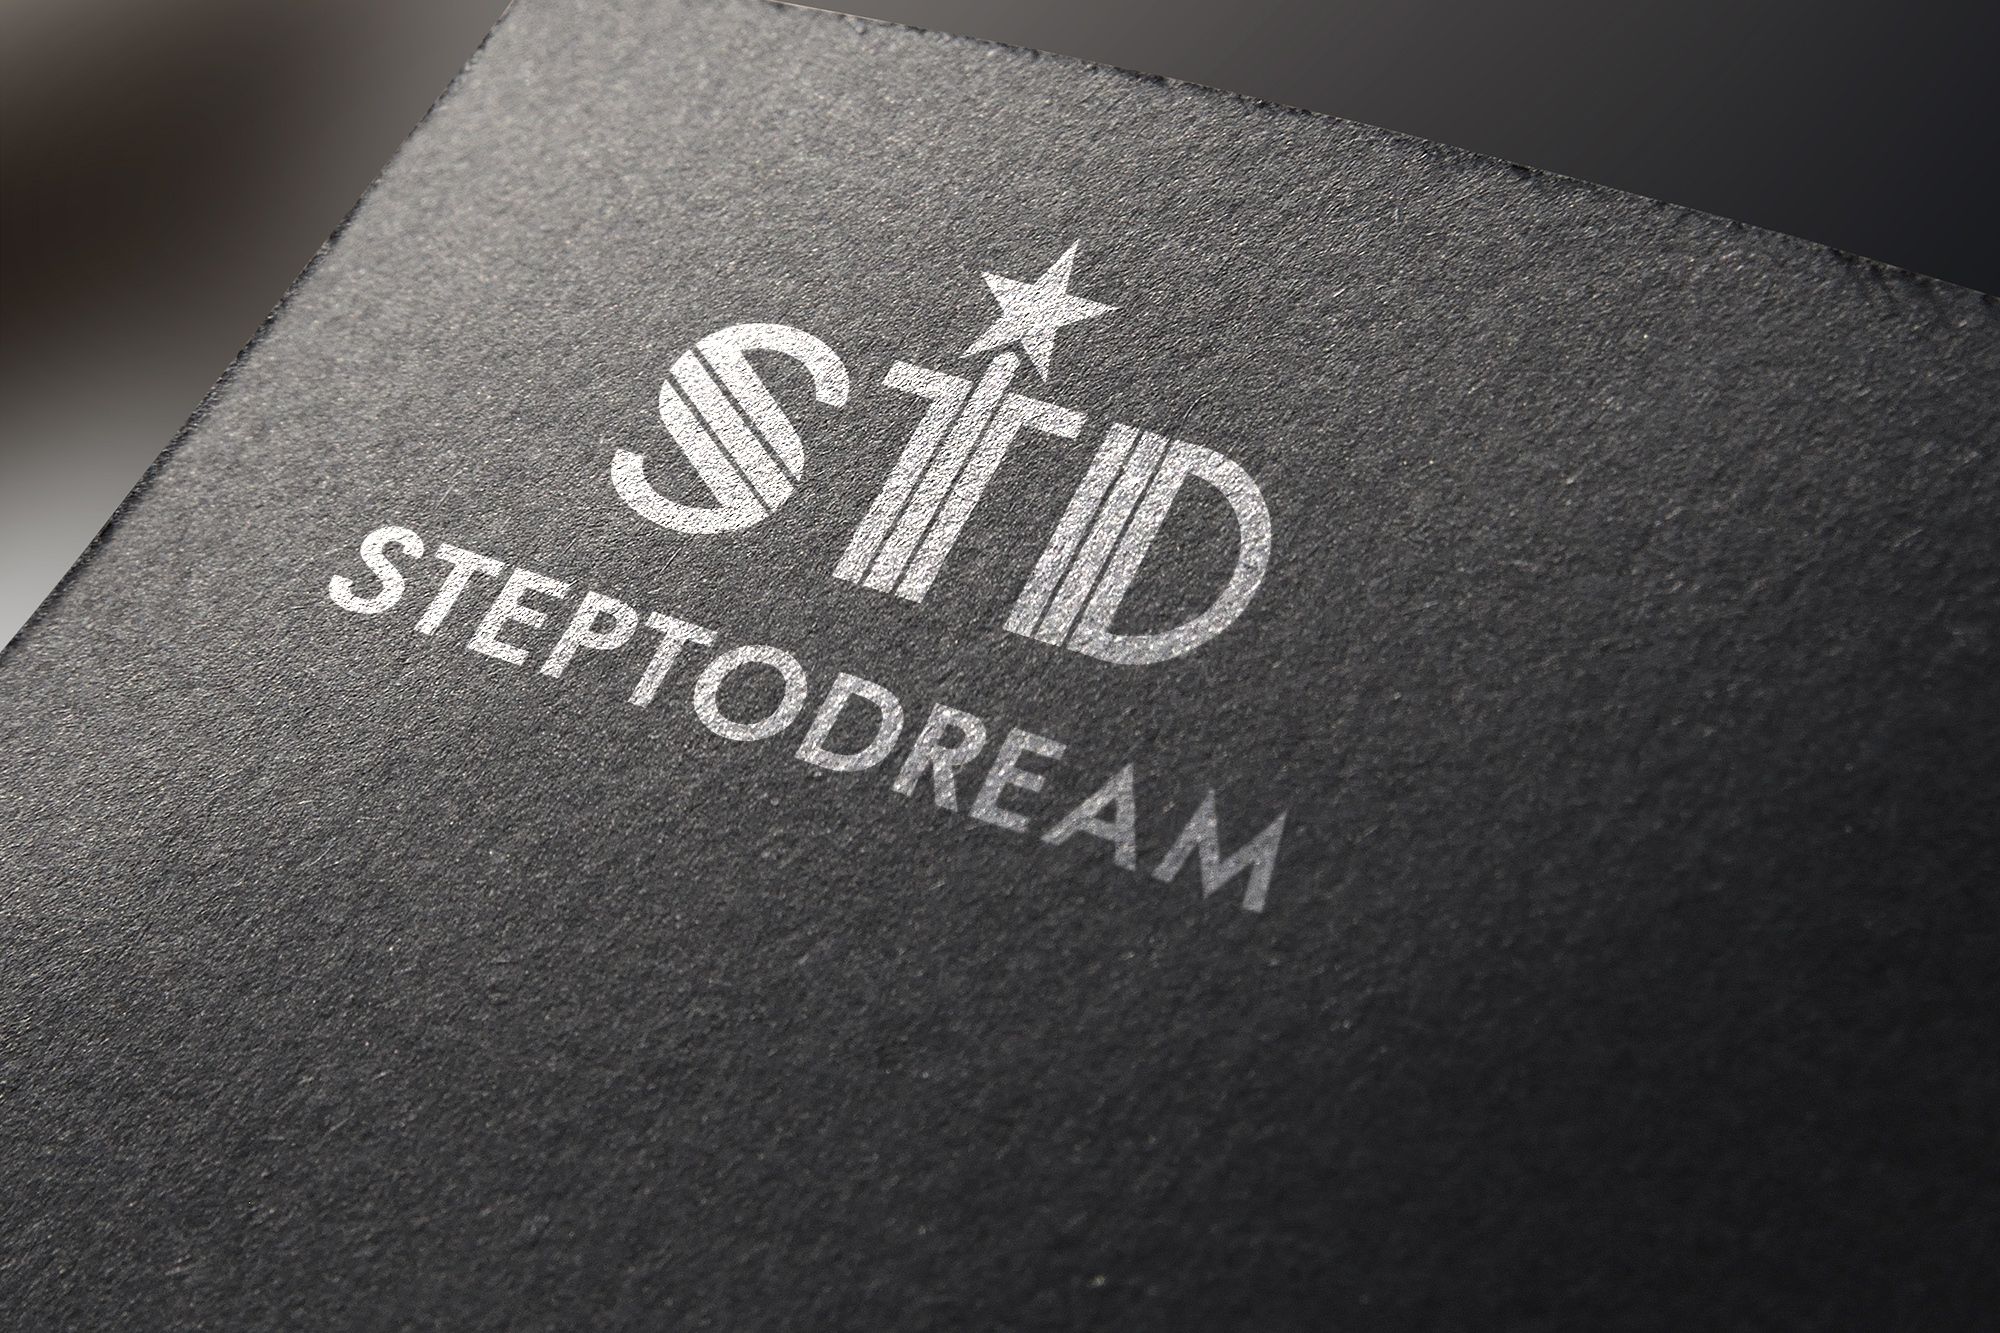 Логотип для StepToDream - дизайнер serz4868